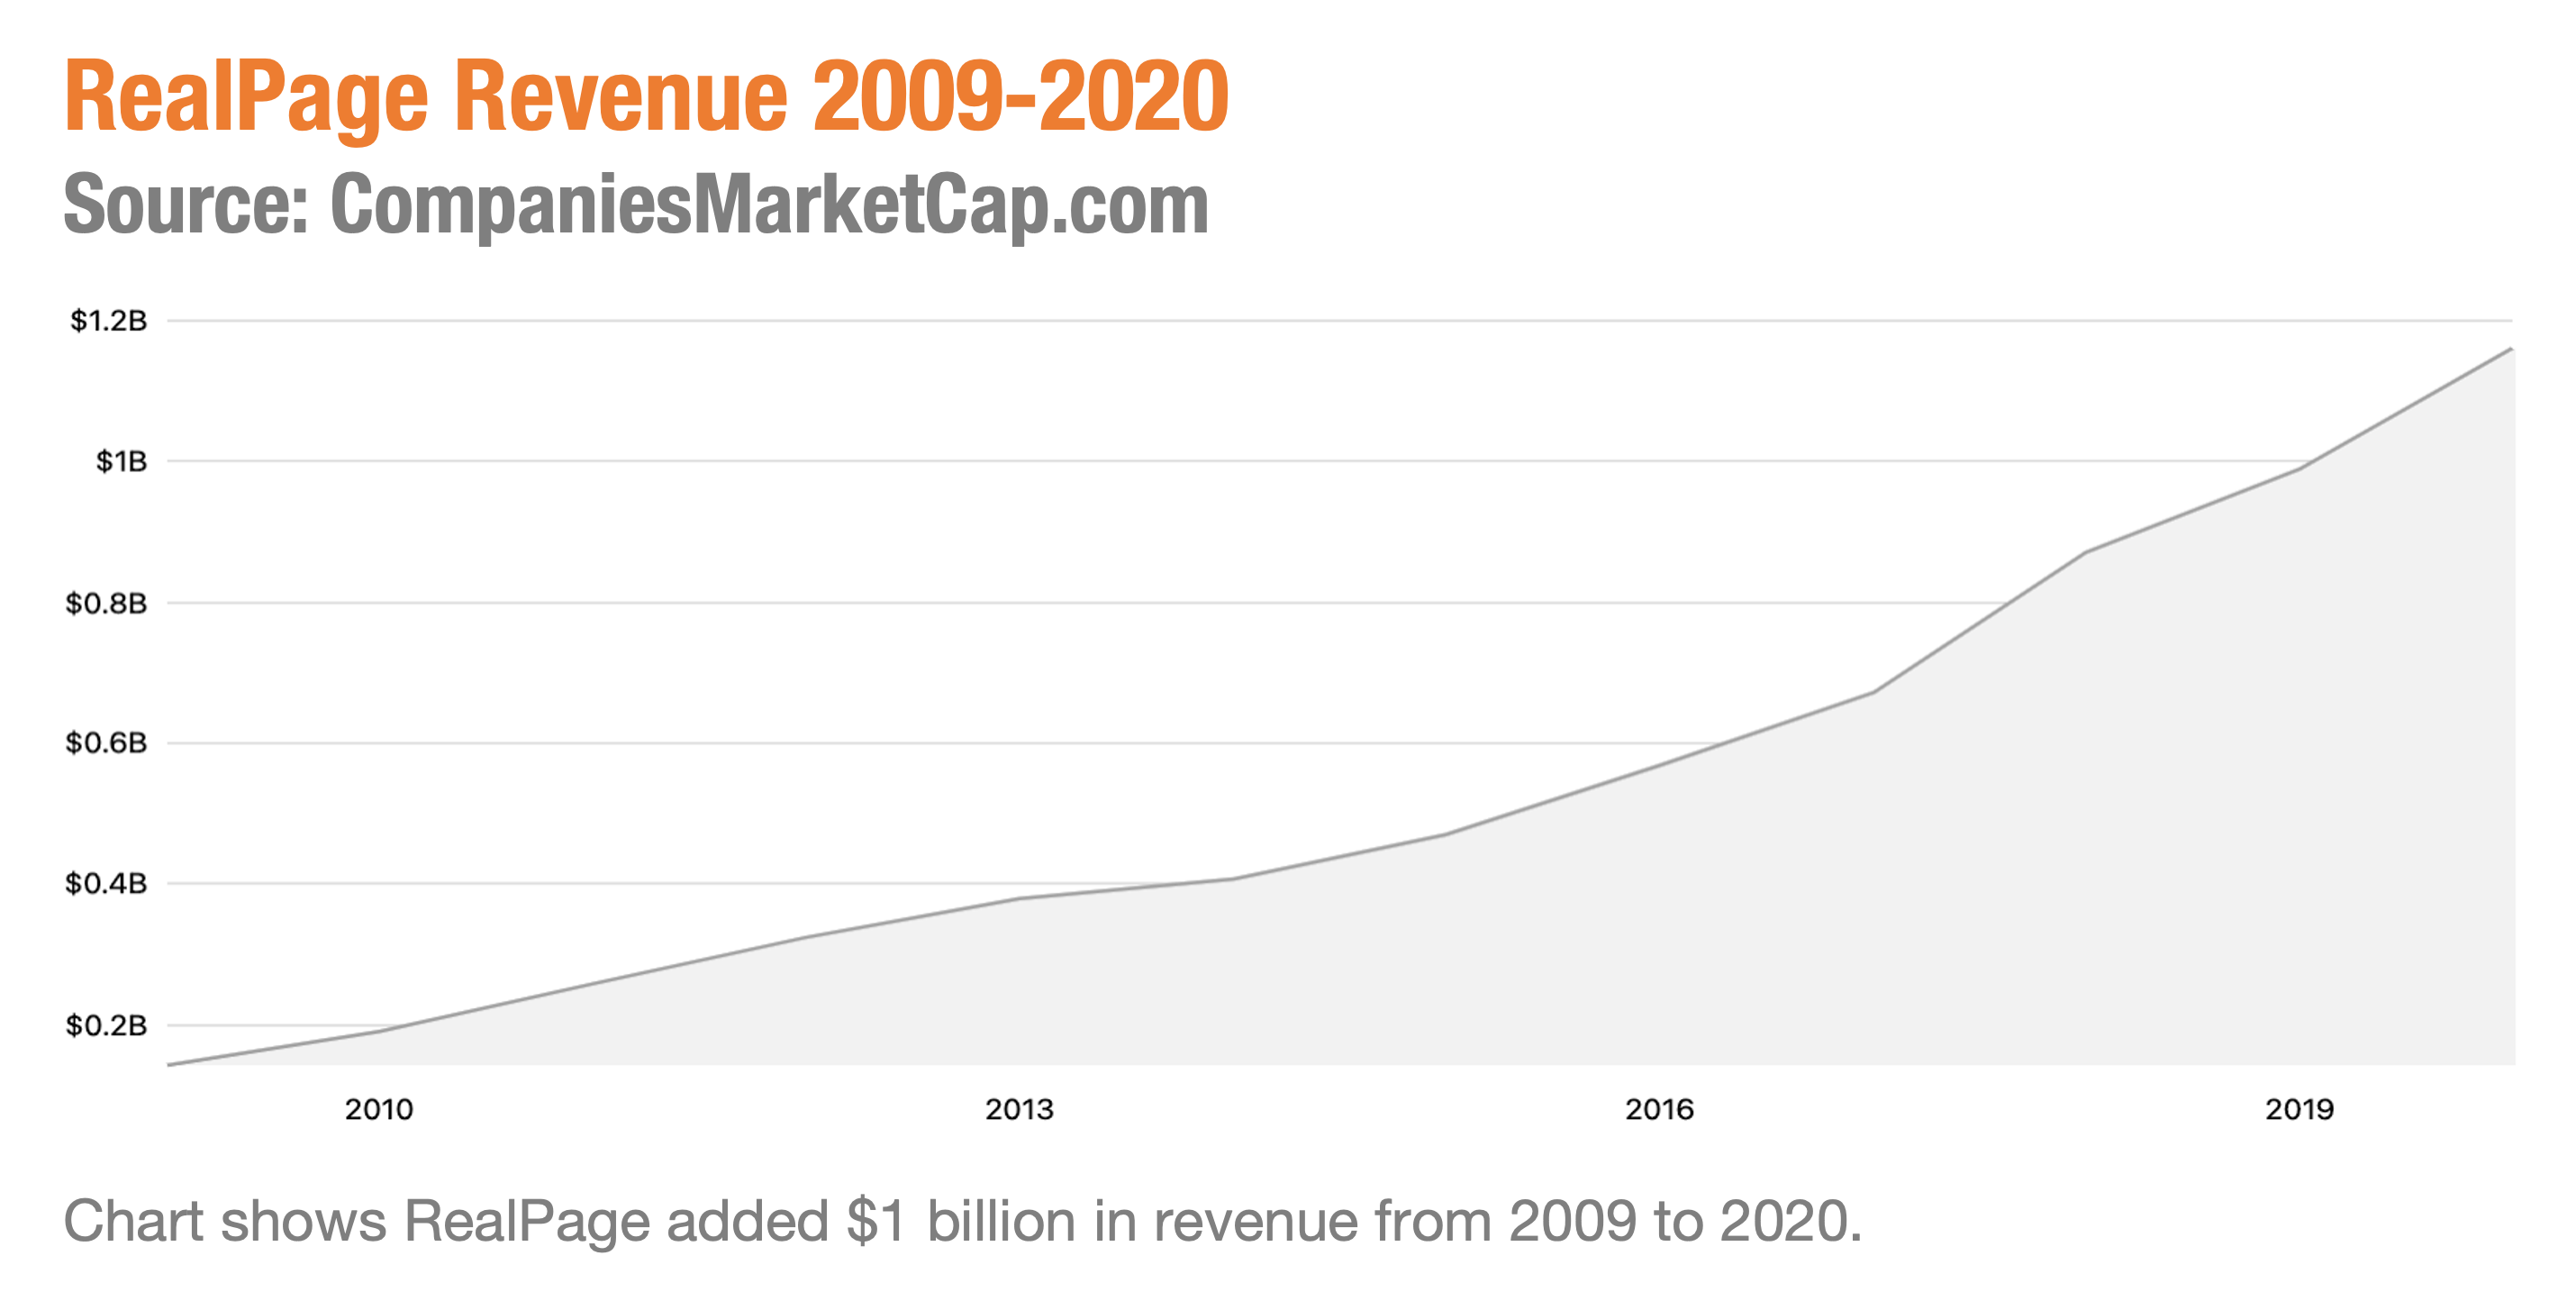 RealPage Revenue 2009-2020